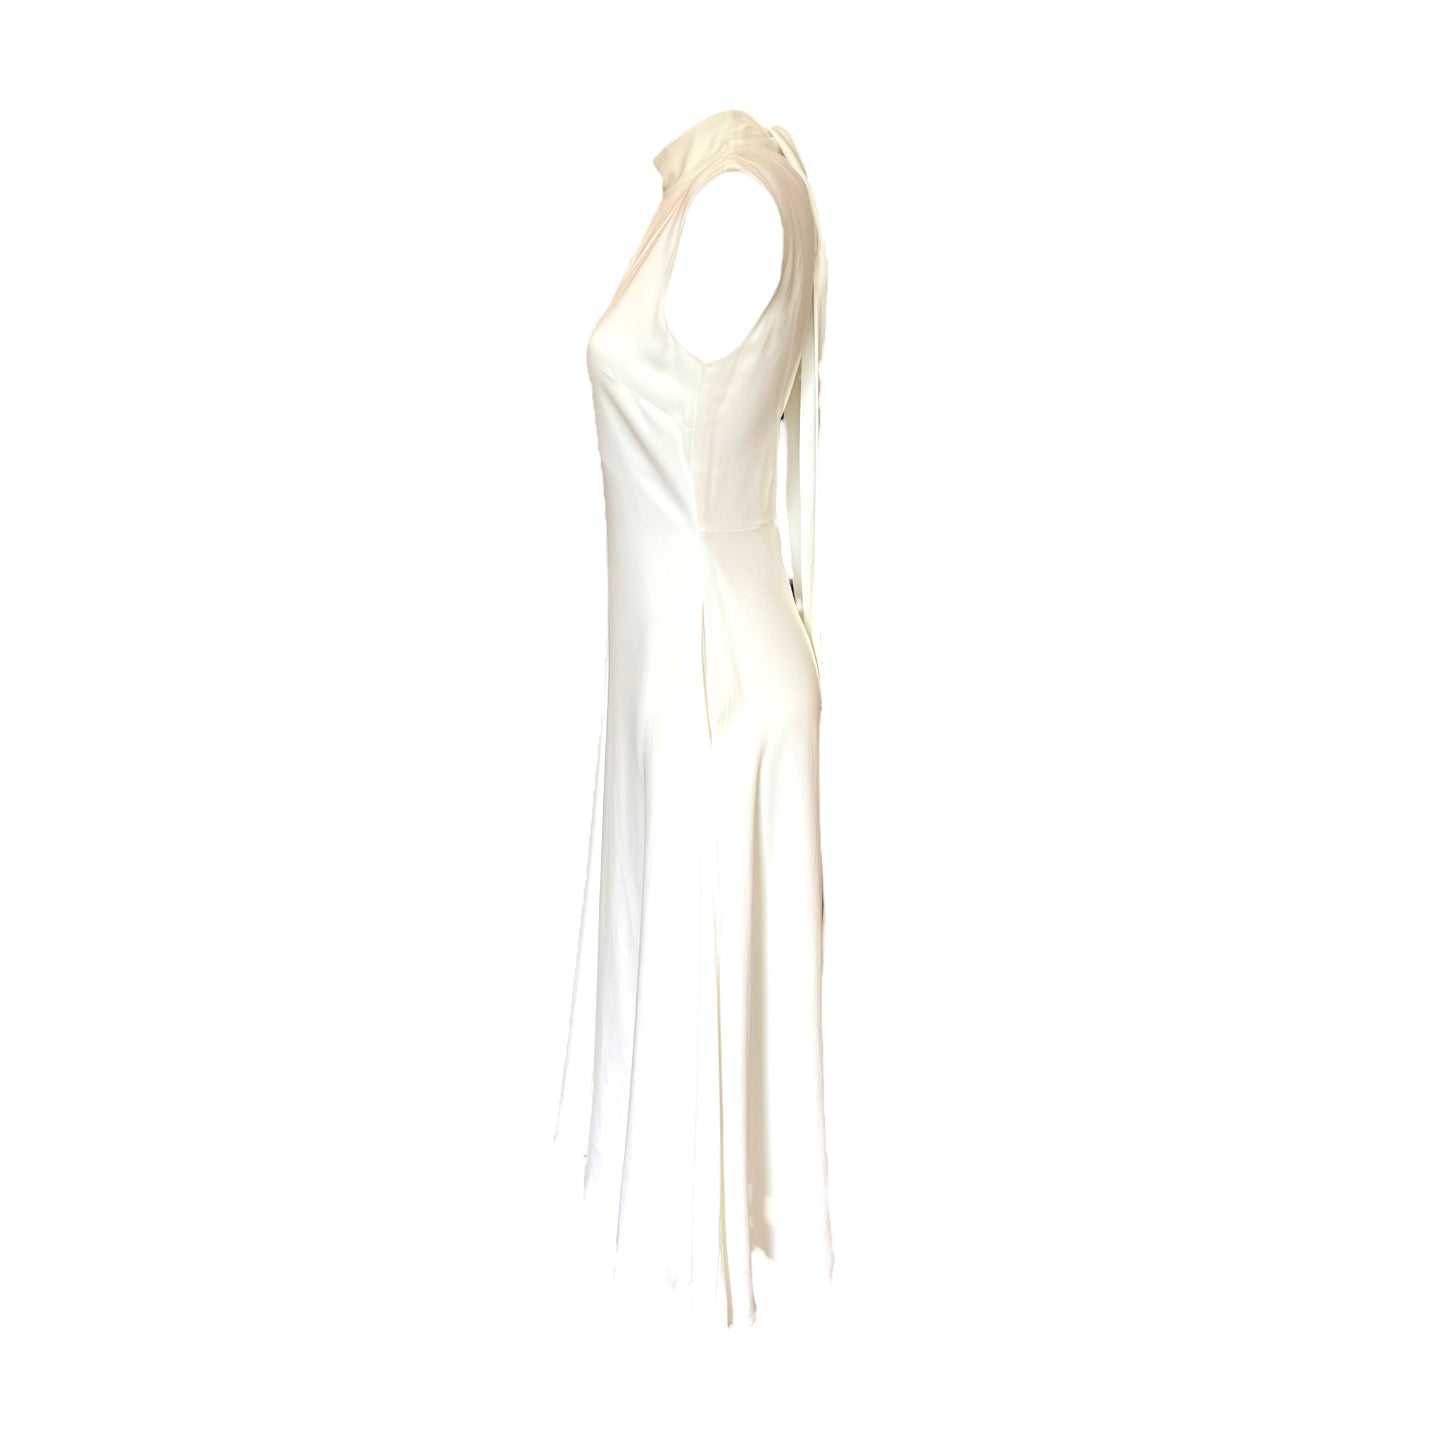 NEW Reiss White Midi Dress